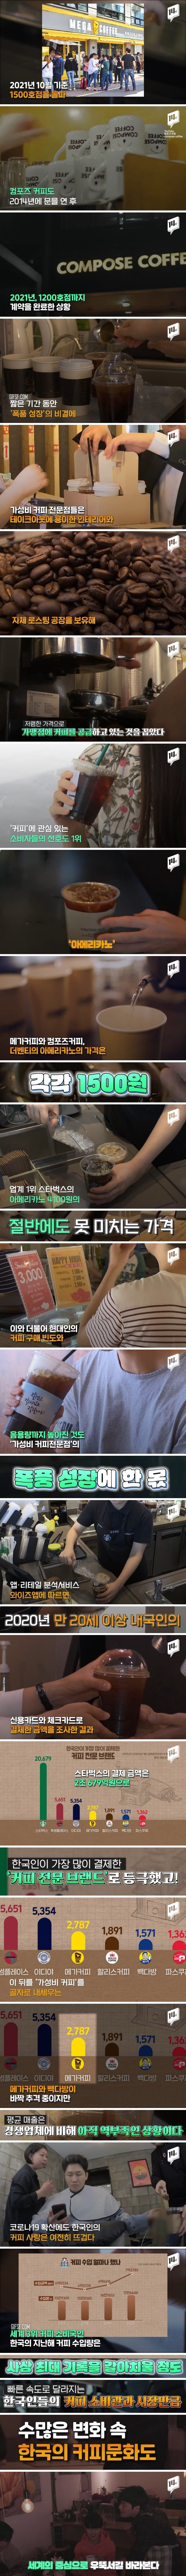 ‘가격 거품 뺀 커피가 대세’. 가성비 커피전문점 ‘스타벅스’ 매장 수 추월 코앞 (2).jpg